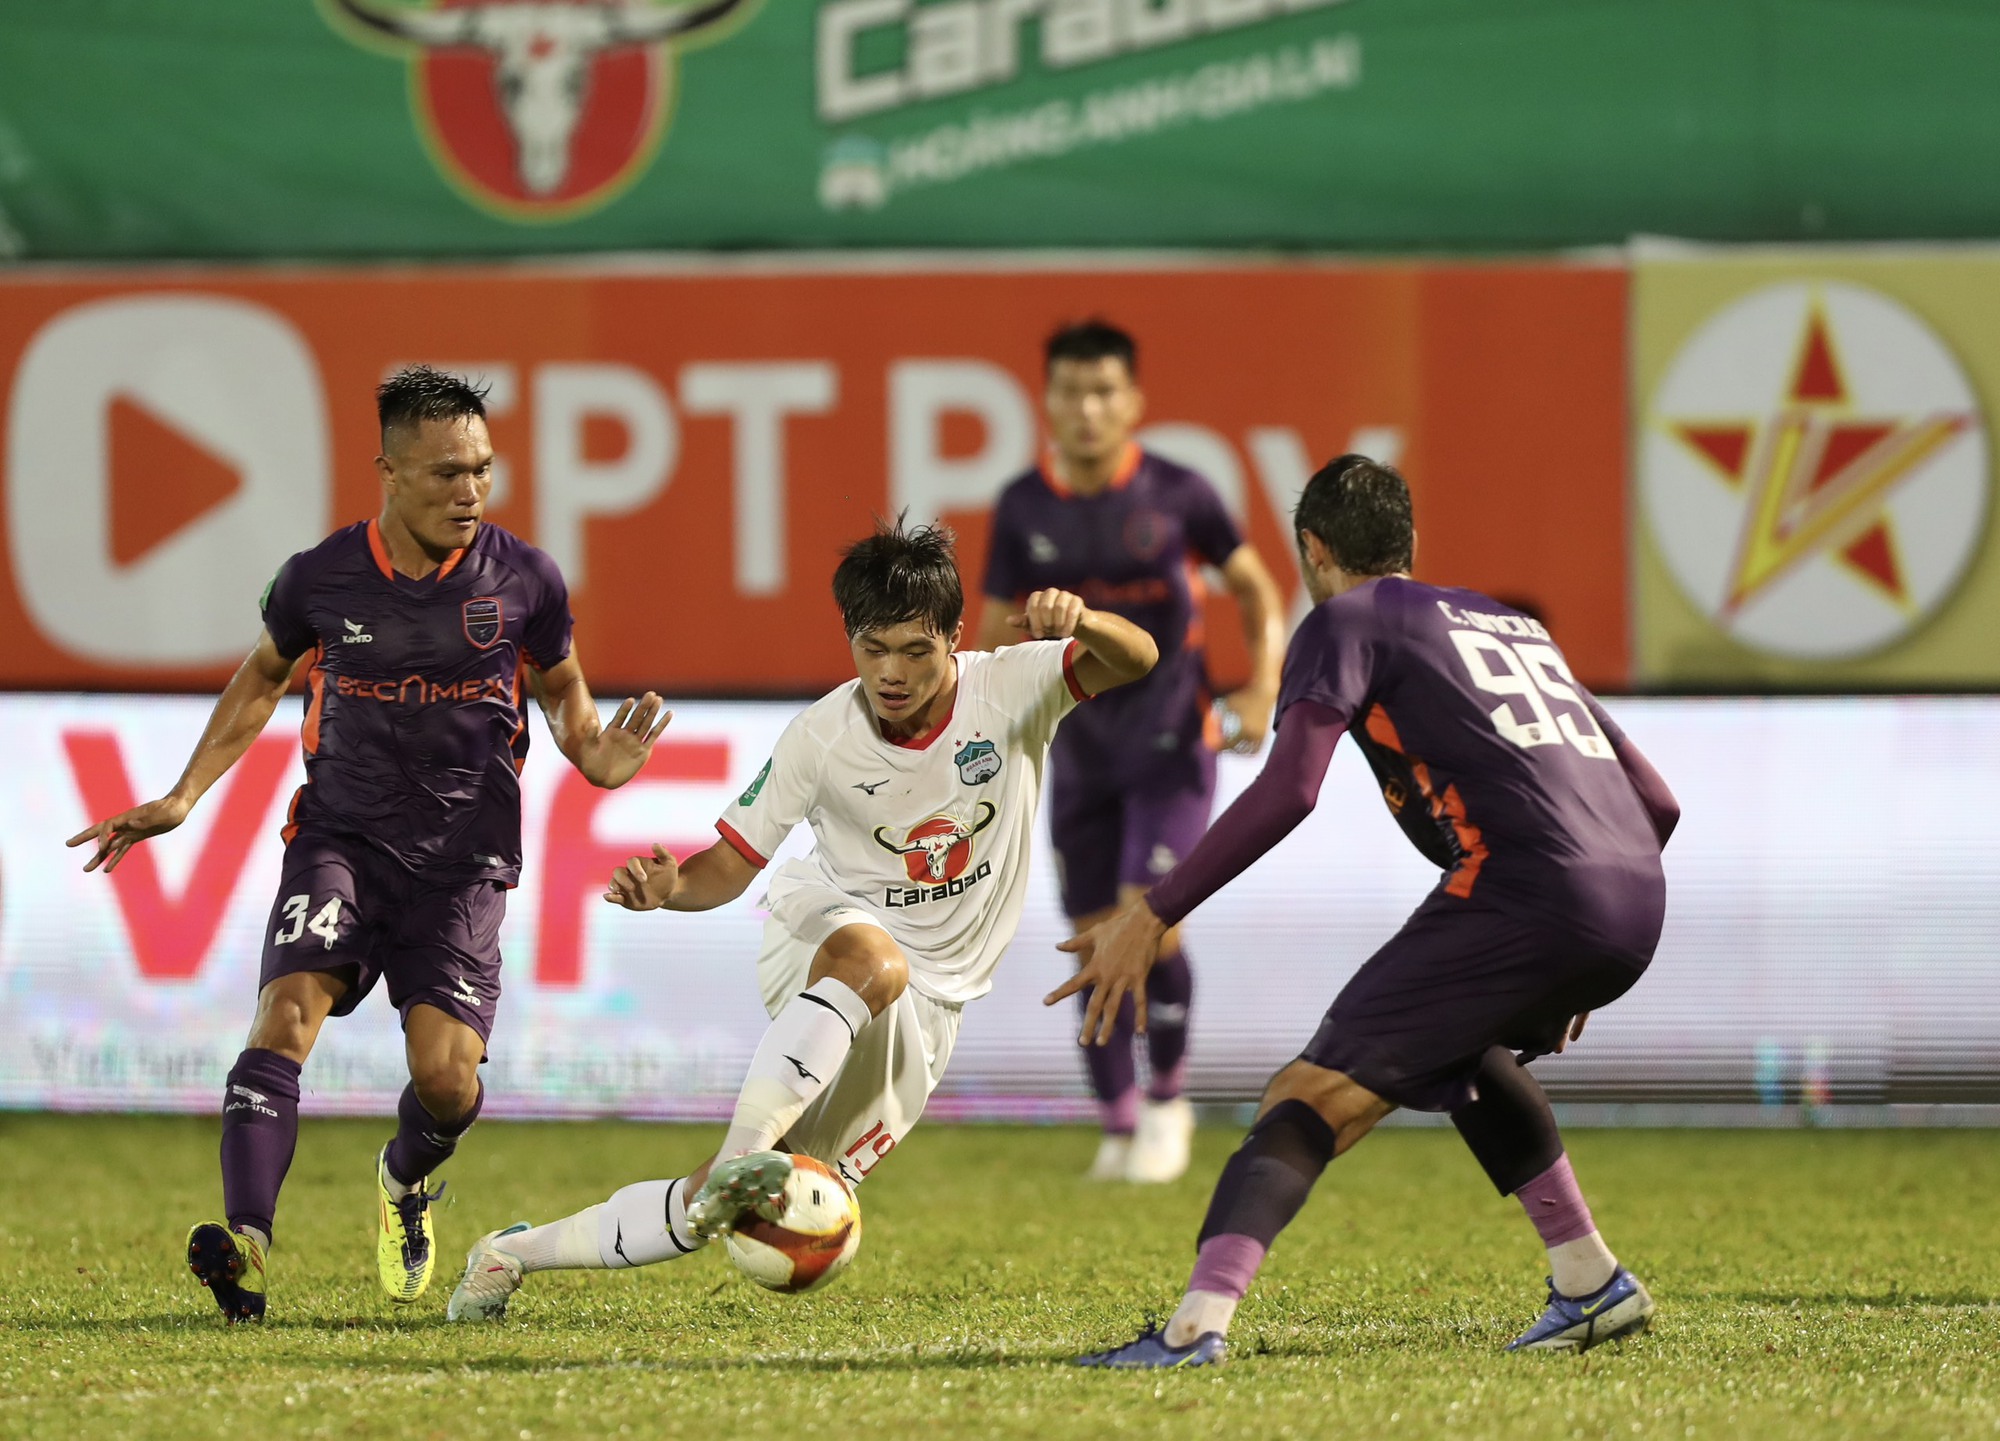 Tuyển thủ U.23 Việt Nam Nguyễn Quốc Việt đi bóng xuyên thủng hàng thủ CLB Bình Dương ghi bàn cho HAGL